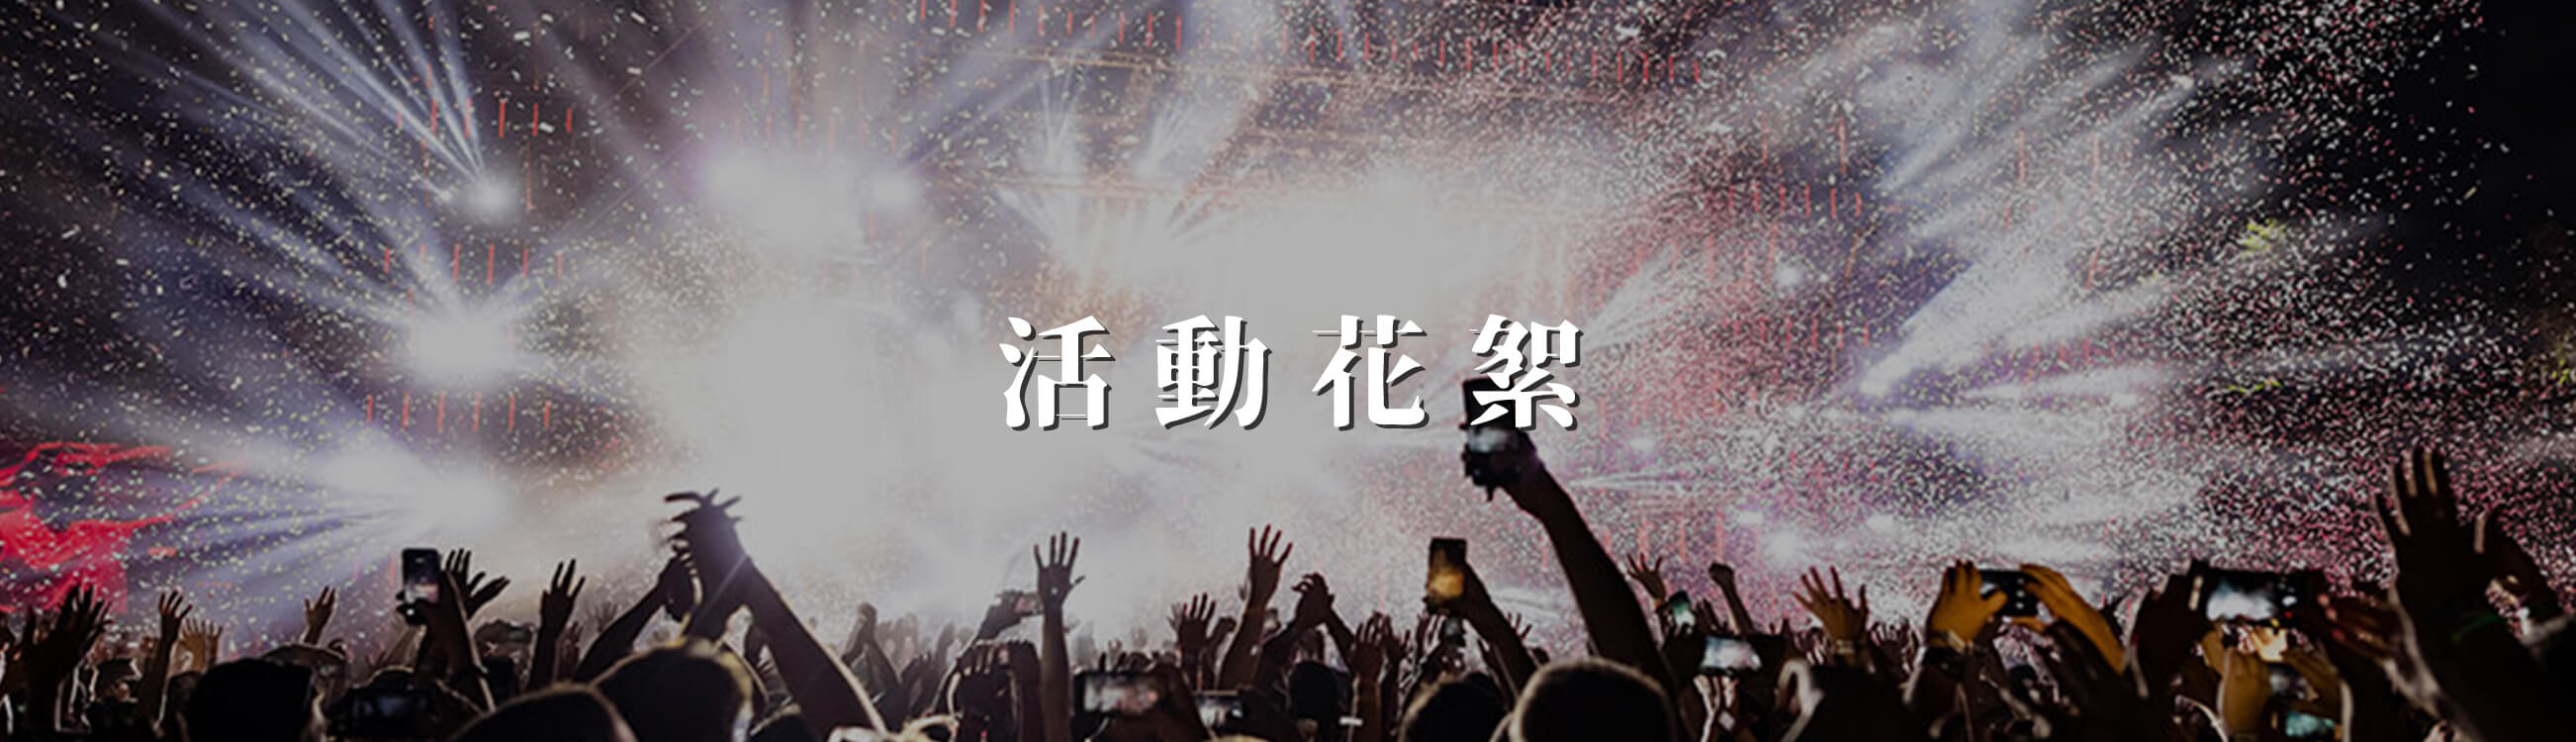 艾斯藝術娛樂公司的活動花絮 Banner圖片